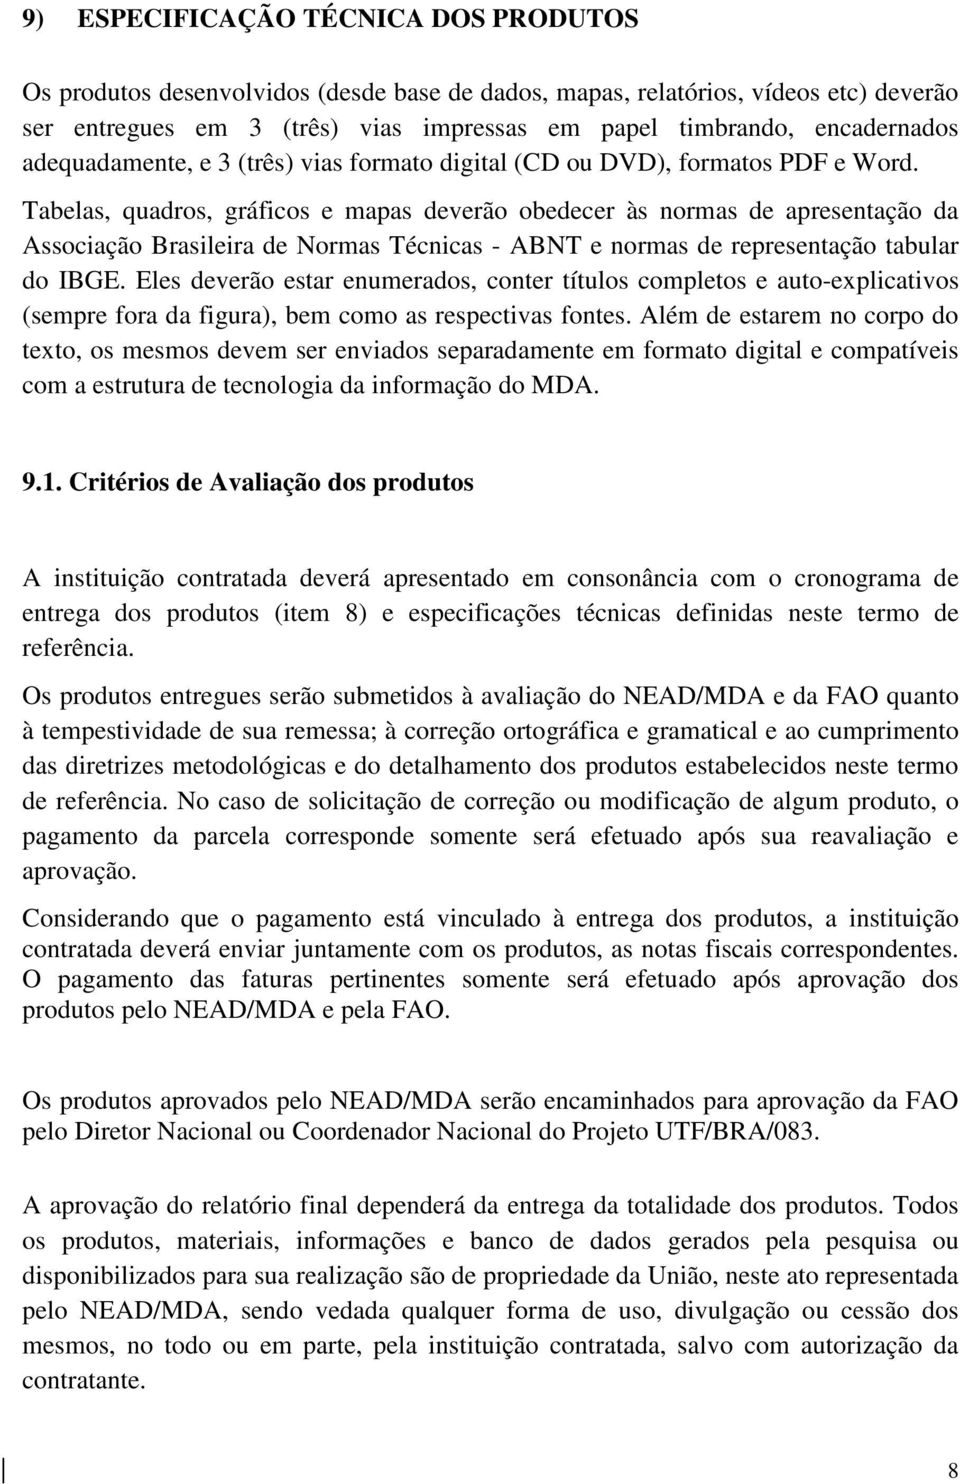 Tabelas, quadros, gráficos e mapas deverão obedecer às normas de apresentação da Associação Brasileira de Normas Técnicas - ABNT e normas de representação tabular do IBGE.